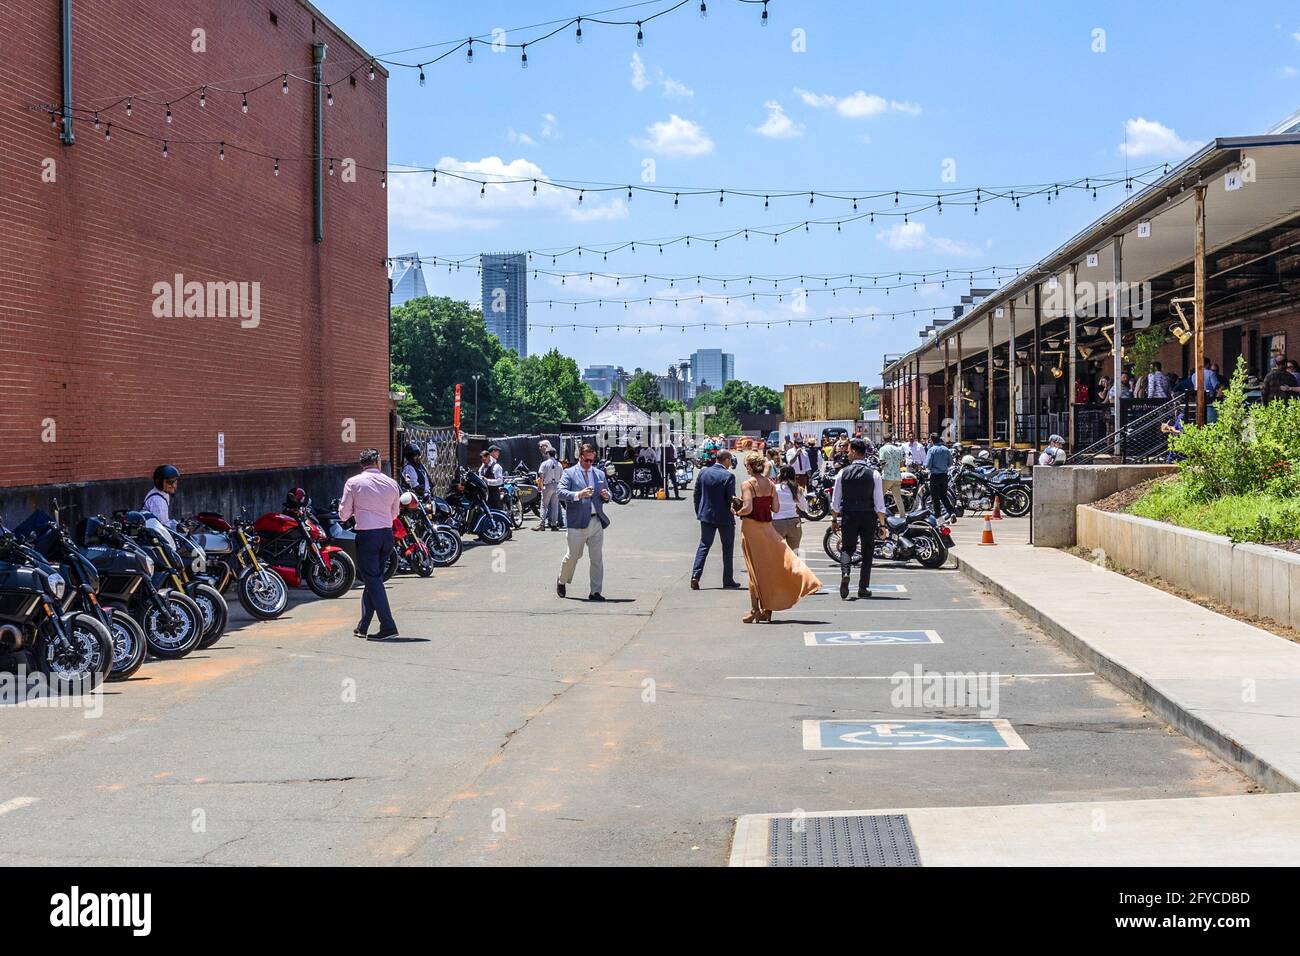 CHARLOTTE, NC, USA-23 MAGGIO 2021: Camp North End. Una folla ben vestita tra le motociclette parcheggiate che socializzano con lo skyline della città in lontananza. Foto Stock